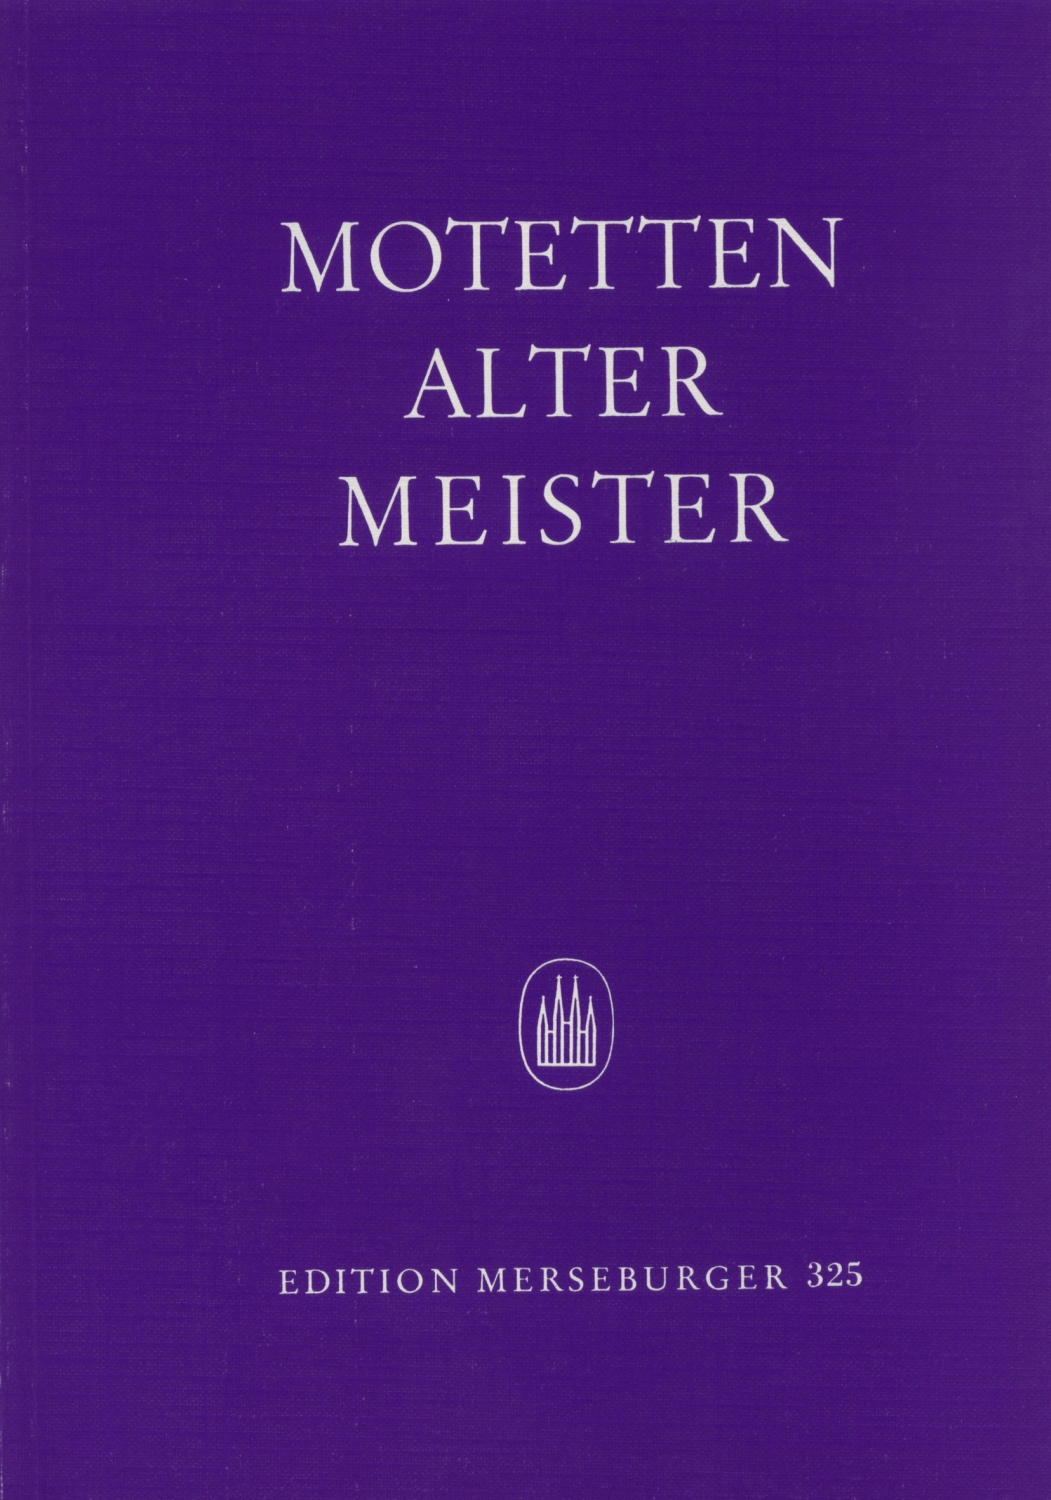 motetten-alter-meister-gemch-_chp_-_0001.JPG